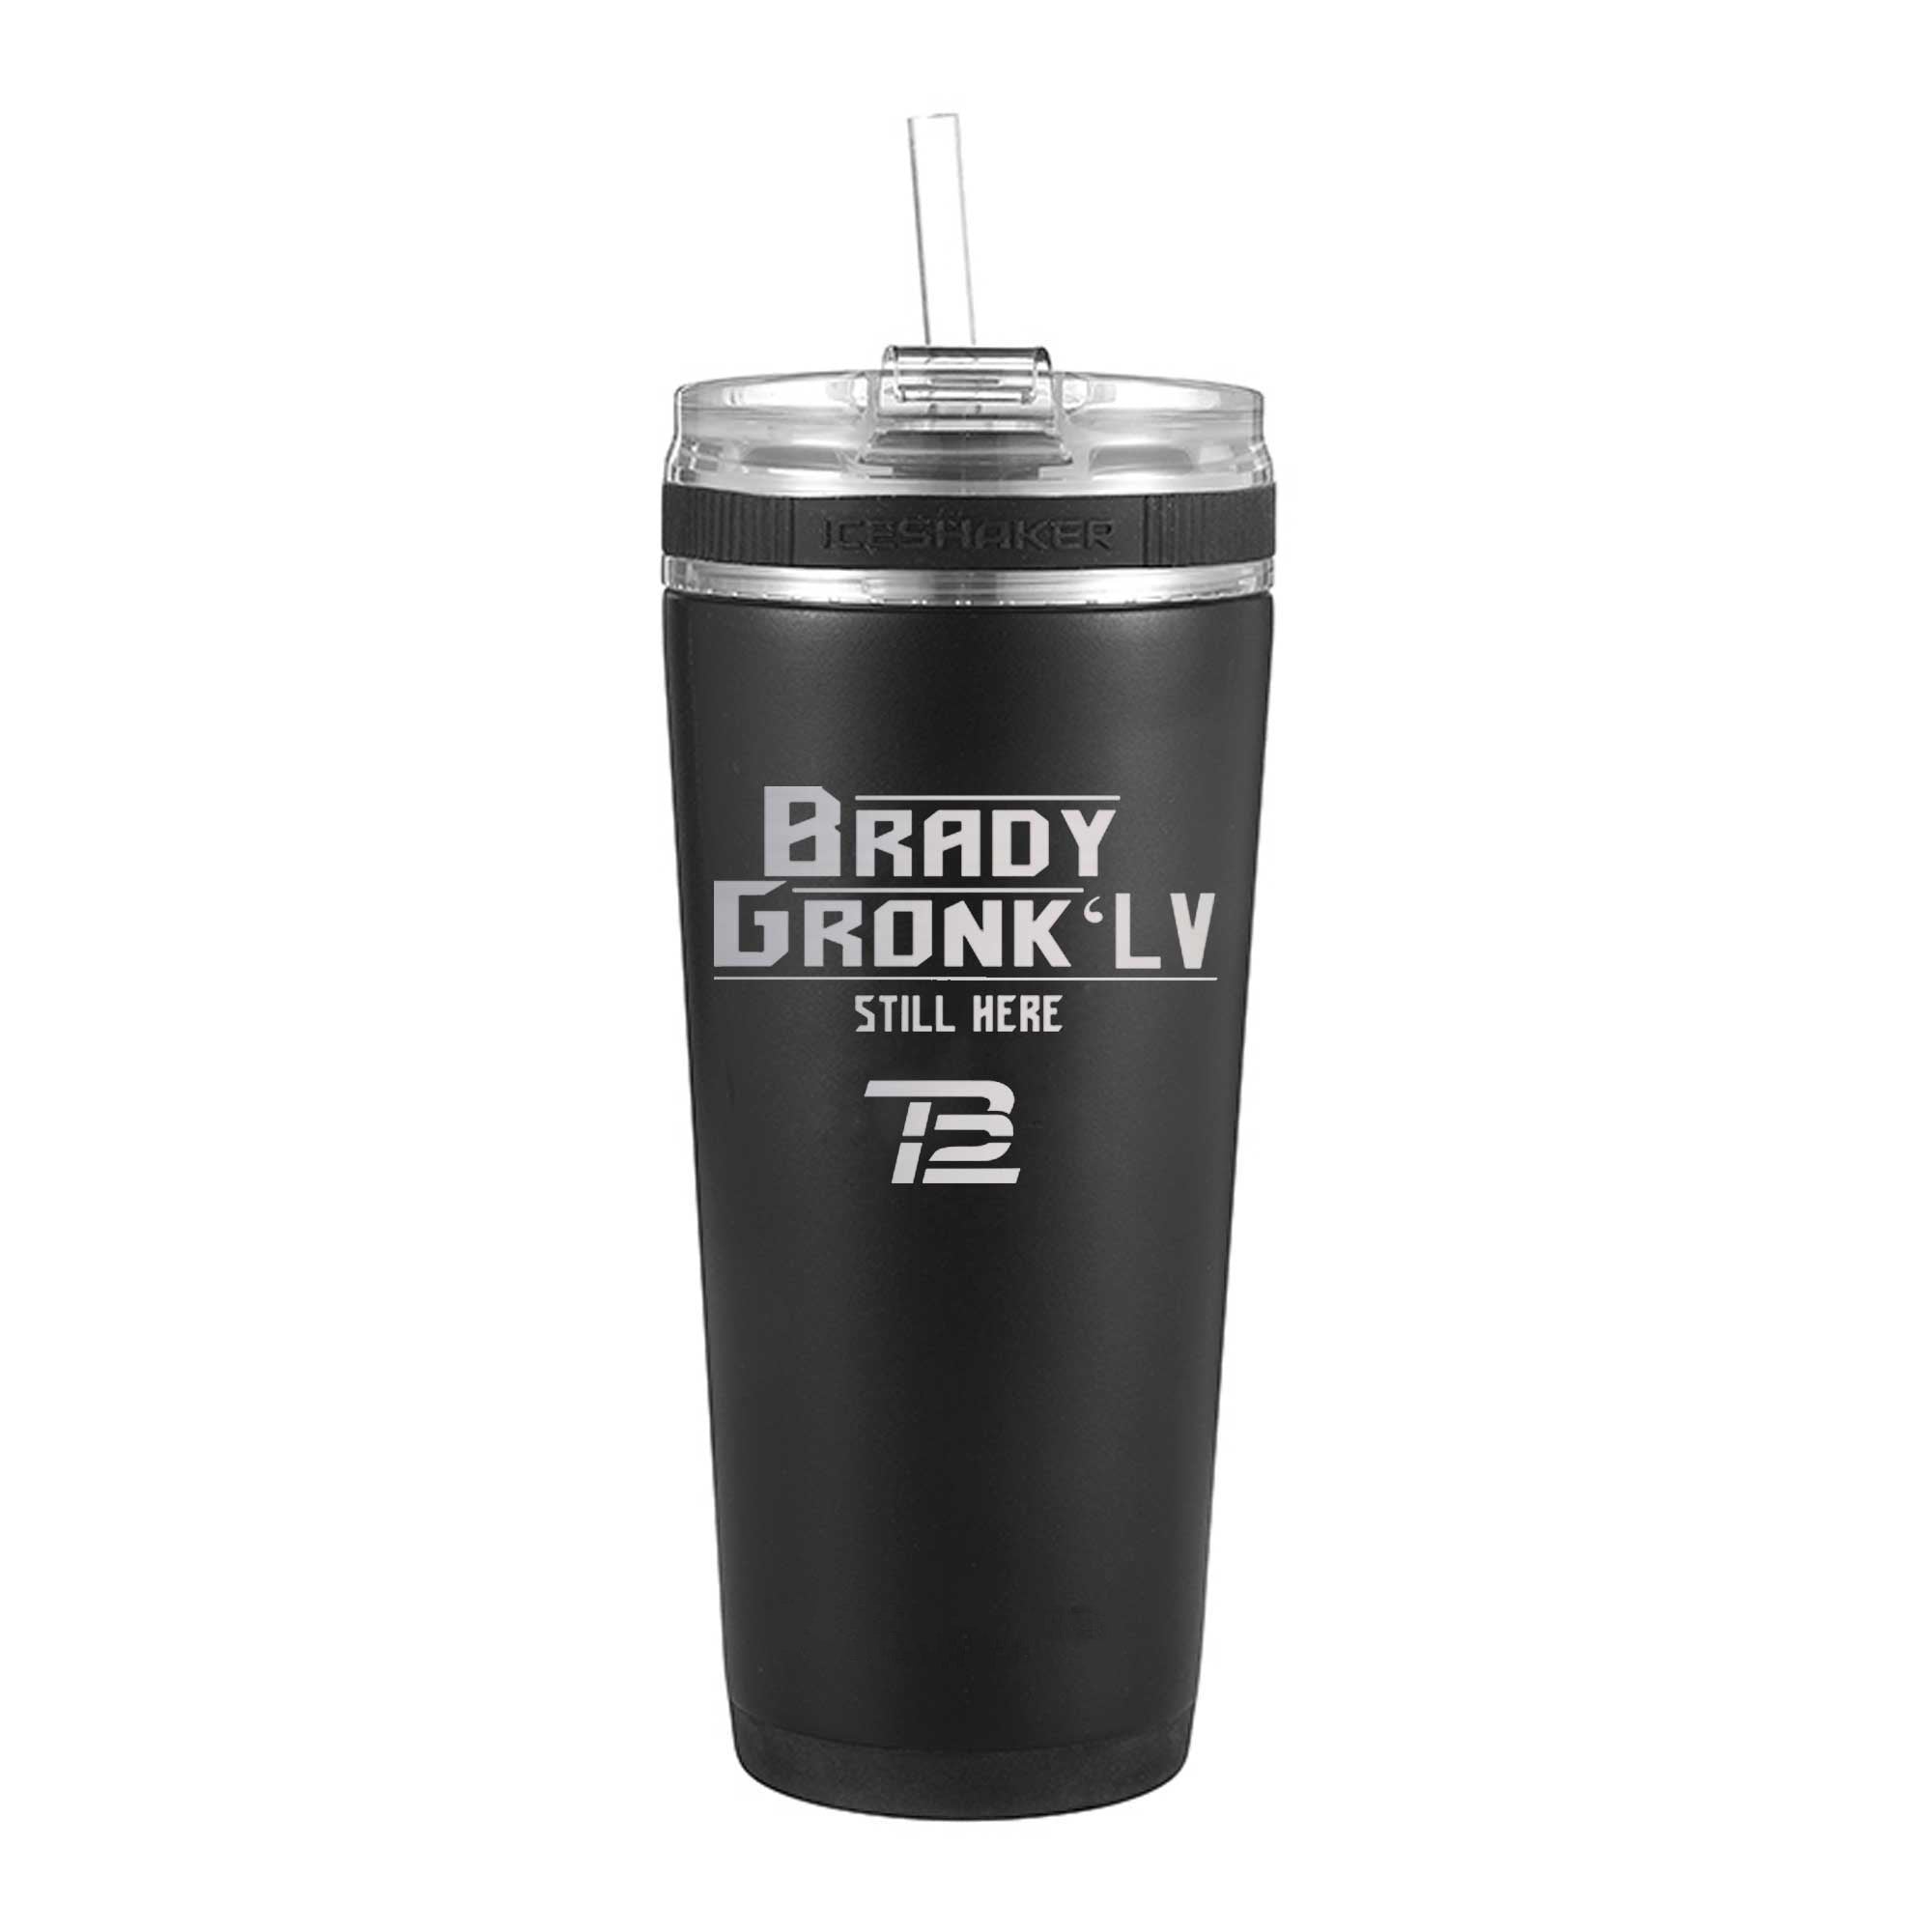 The Gronk Shaker - Custom 26oz Shaker Bottle – Bottle Caddy